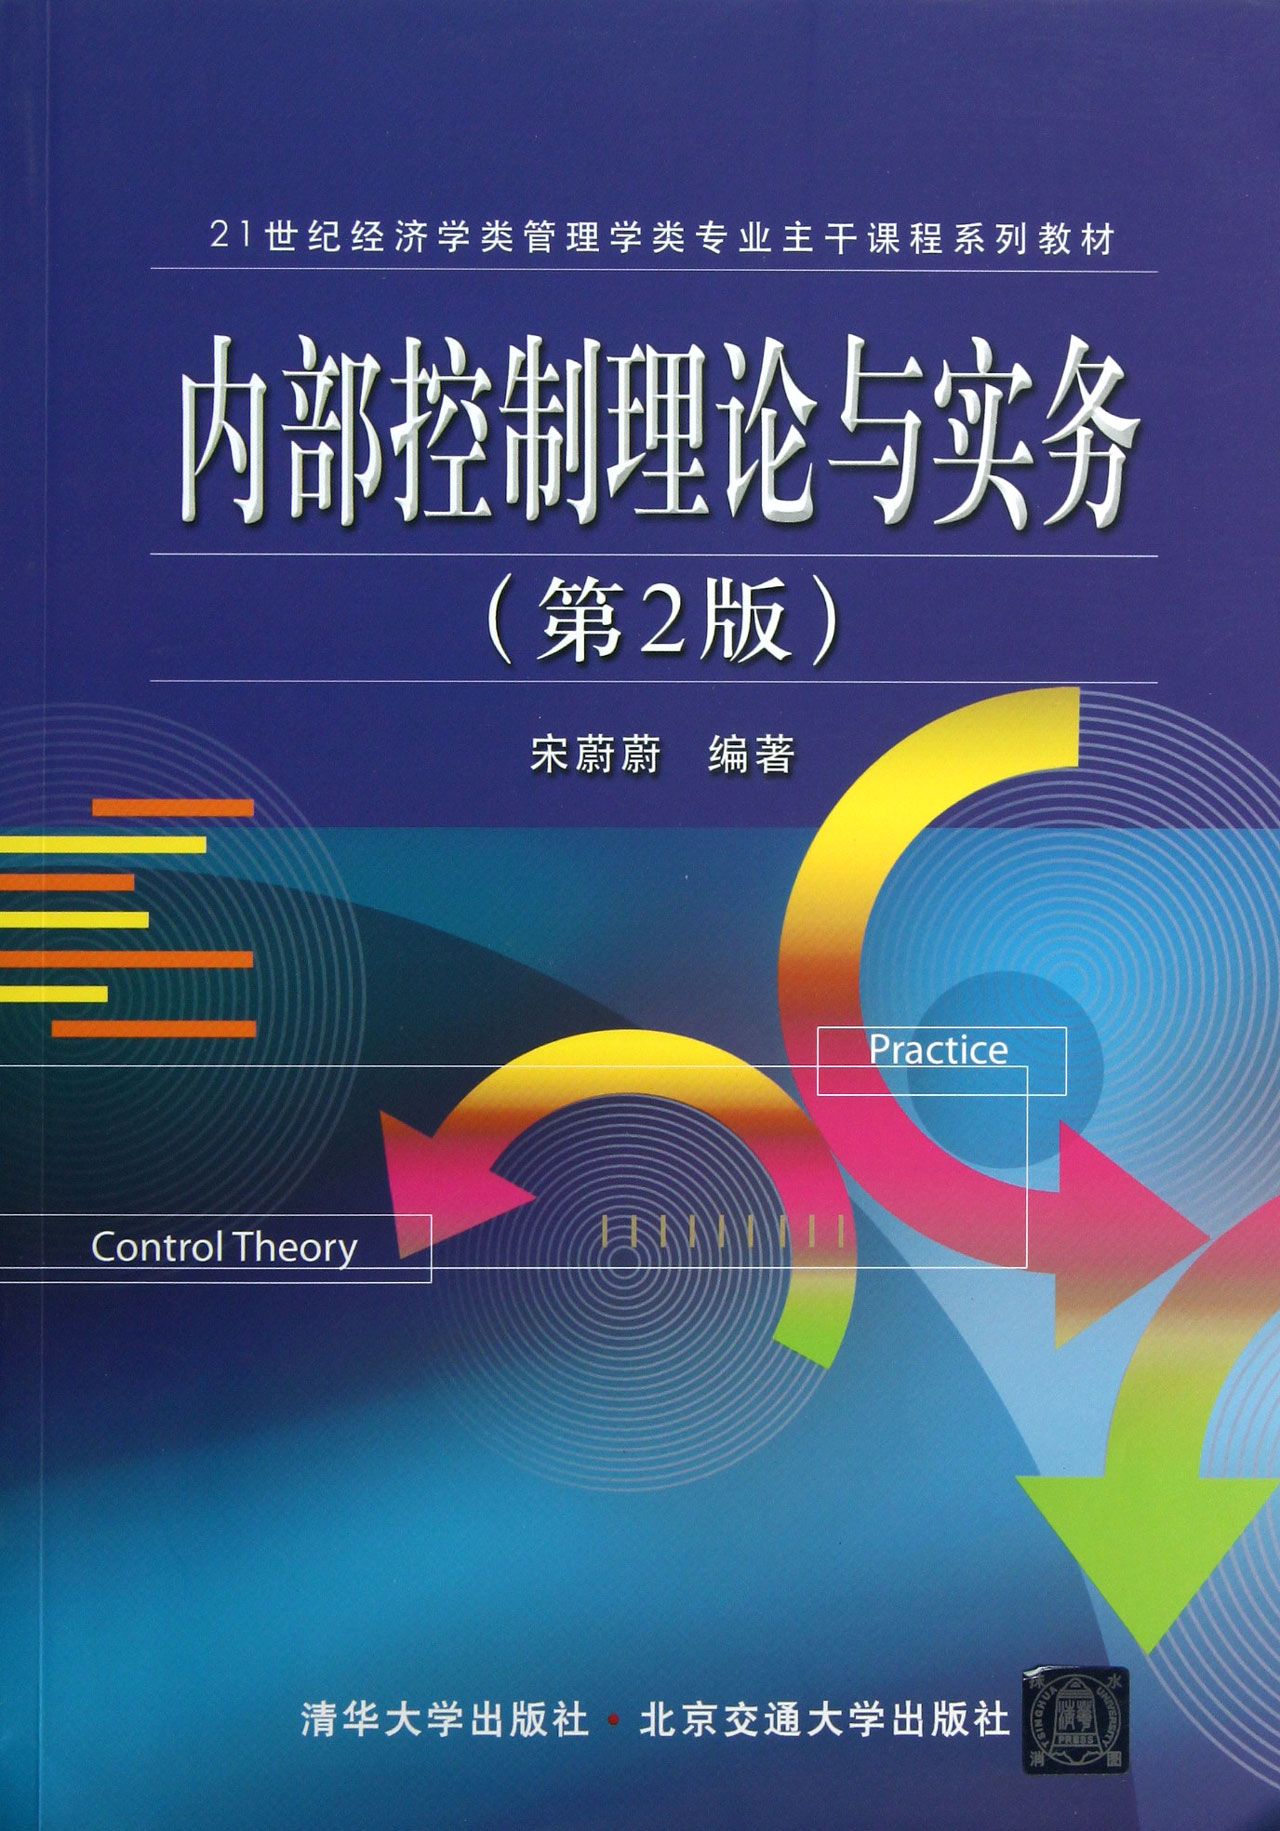 管理學理論與實務(北京大學出版社出版書籍)